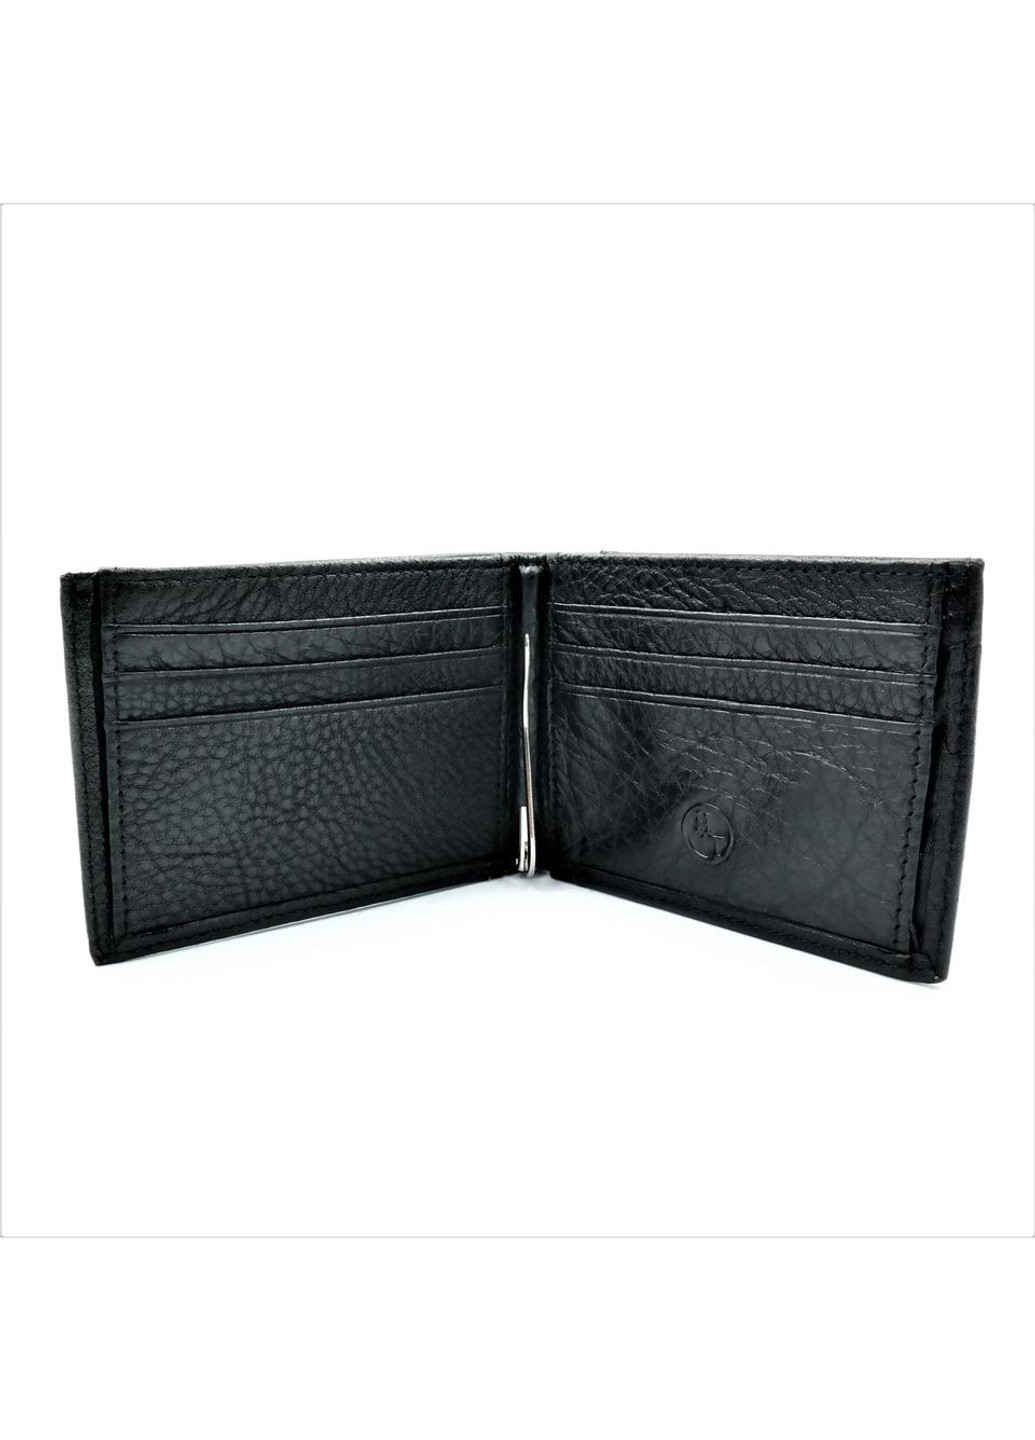 Мужской кожаный кошелек-зажим 11 х 8 х 2 см Черный wtro-168-24C Weatro (272596151)